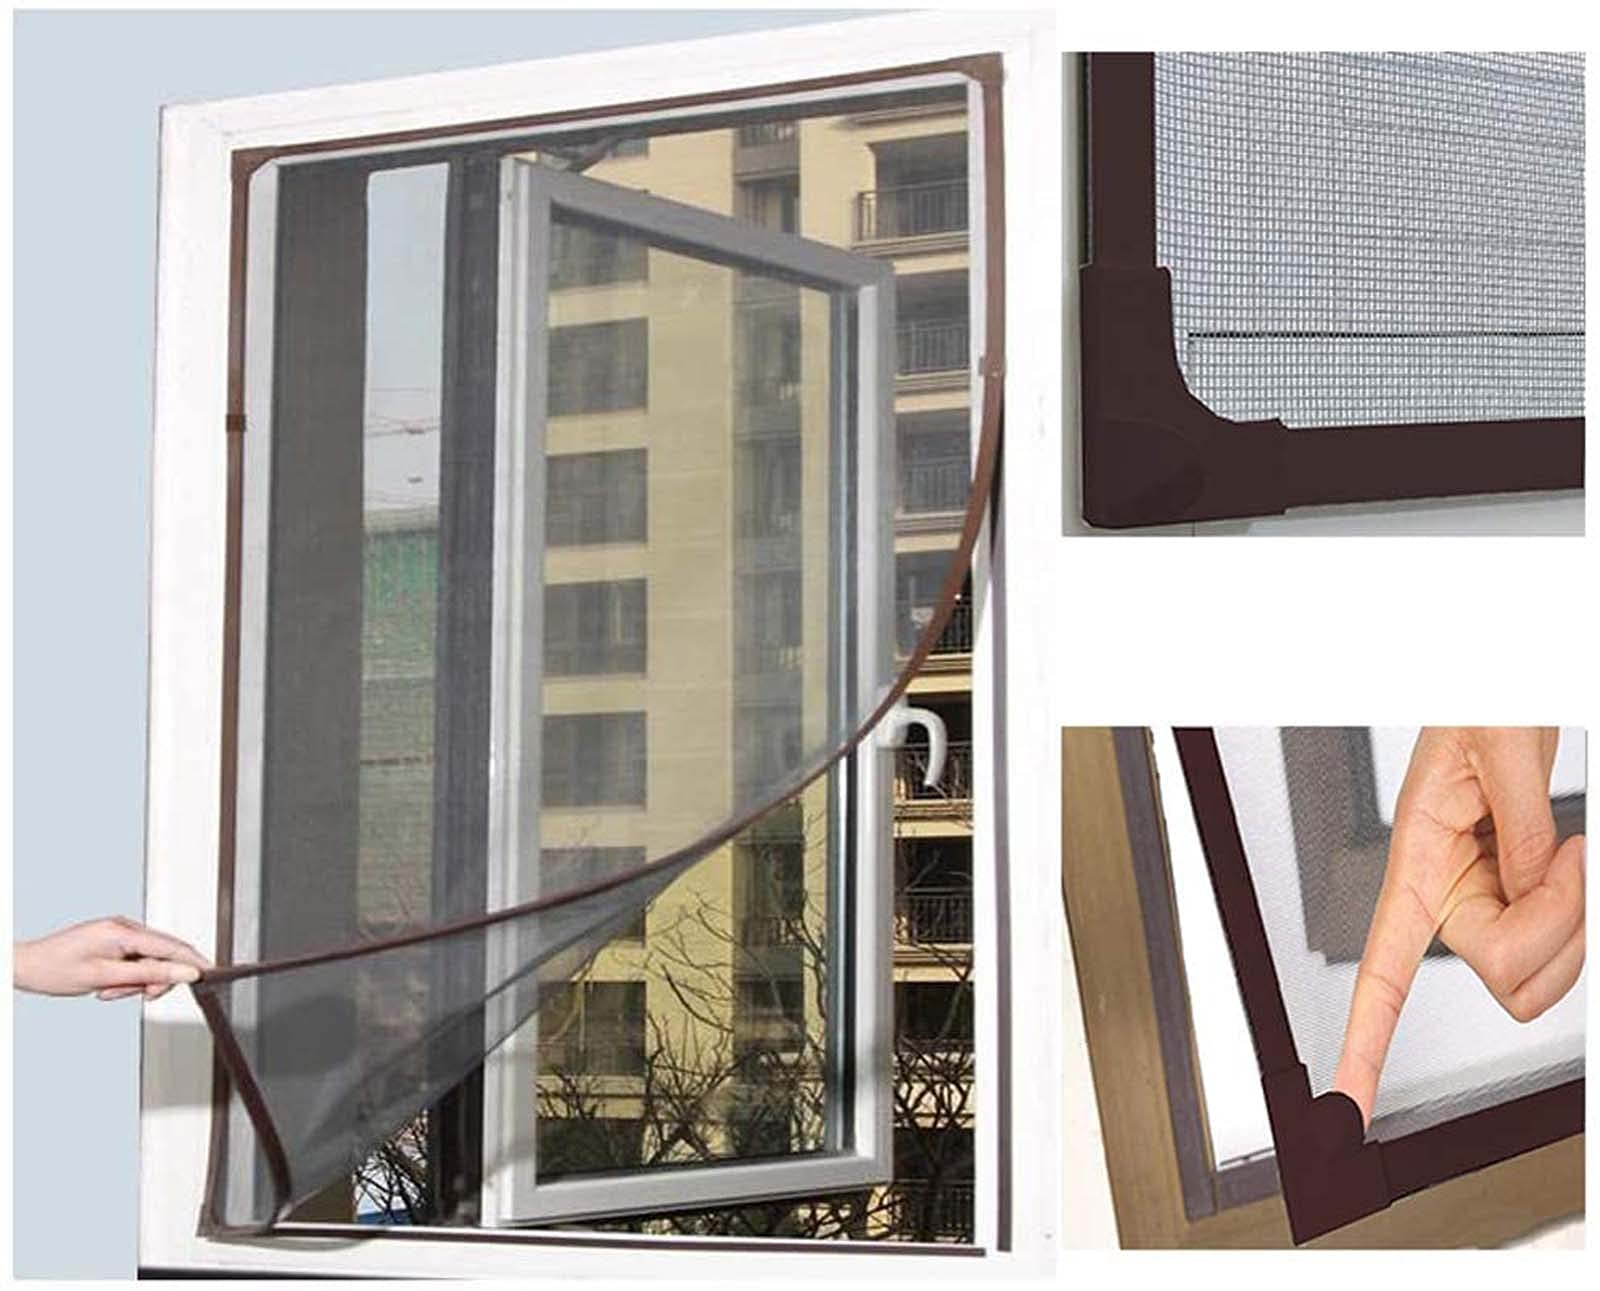 Hengz Katzenschutz-Fenster, magnetisch, zuschneidbar, Moskitonetz, Insektenschutz-Fenster mit Rahmen, hält Fliegen fern, zuschneidbar, Insektenvorhang, 180 x 200 cm (braun)